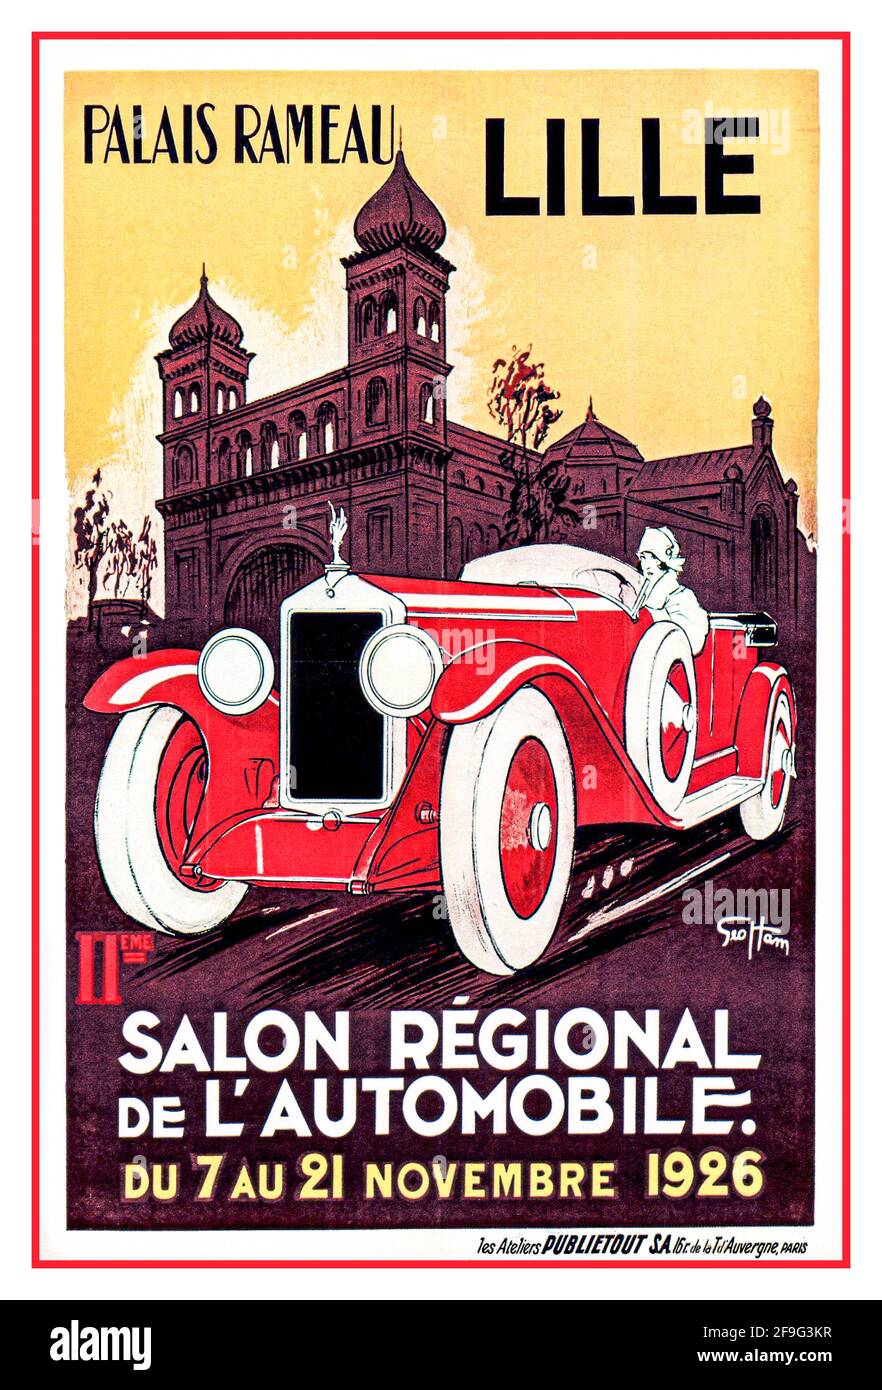 Vintage Automobile Poster Palais Rameau LILLE Salon regional de L’Automobile du 7 au 21 Novembre 1926 Stock Photo